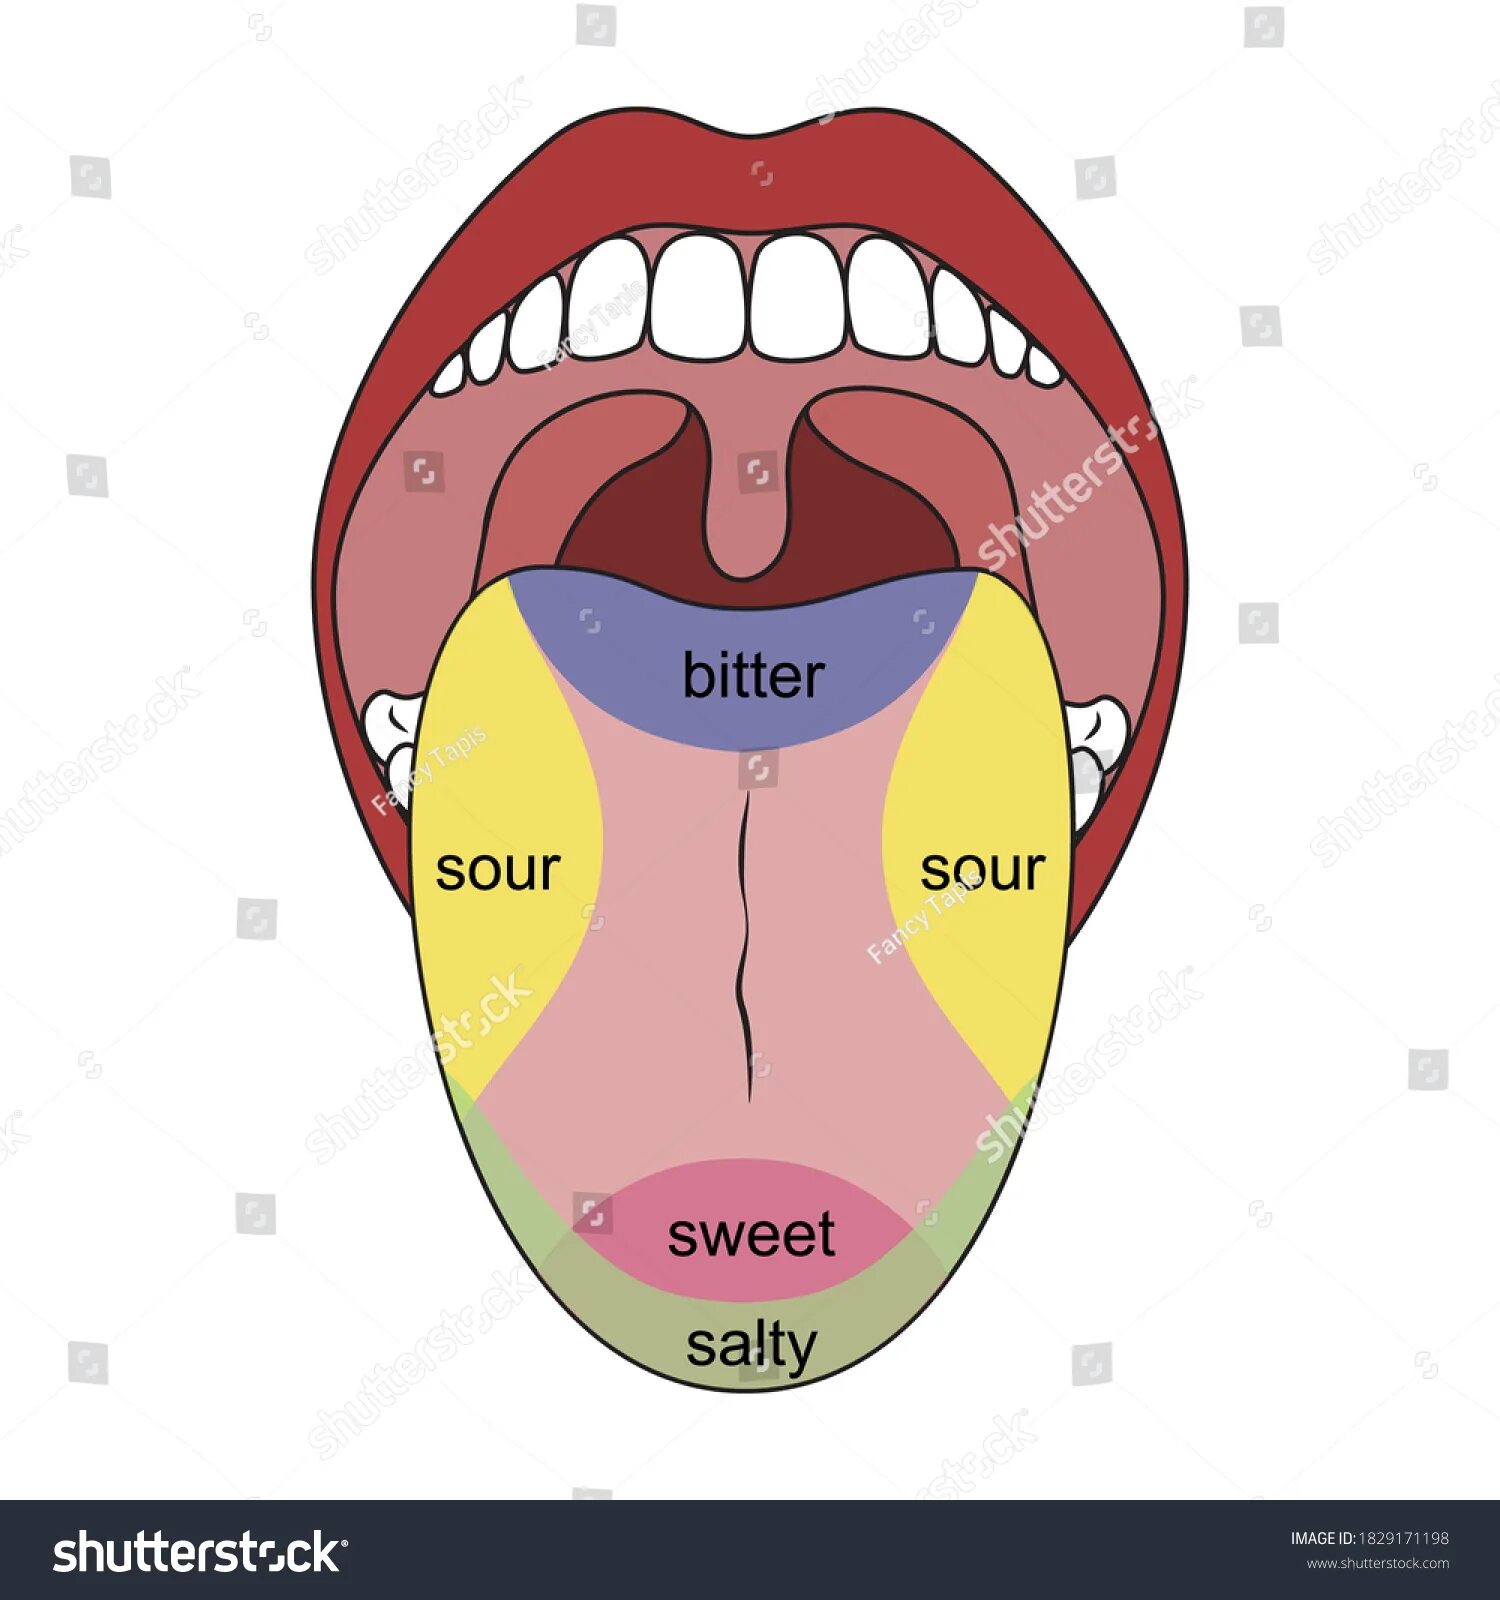 Пять вкусов человека. Вкусовые рецепторы на языке умами. 5. Вкусовая карта языка.. 5 Вкусовых рецепторов. 5 Вкусовых рецепторов у человека умами.